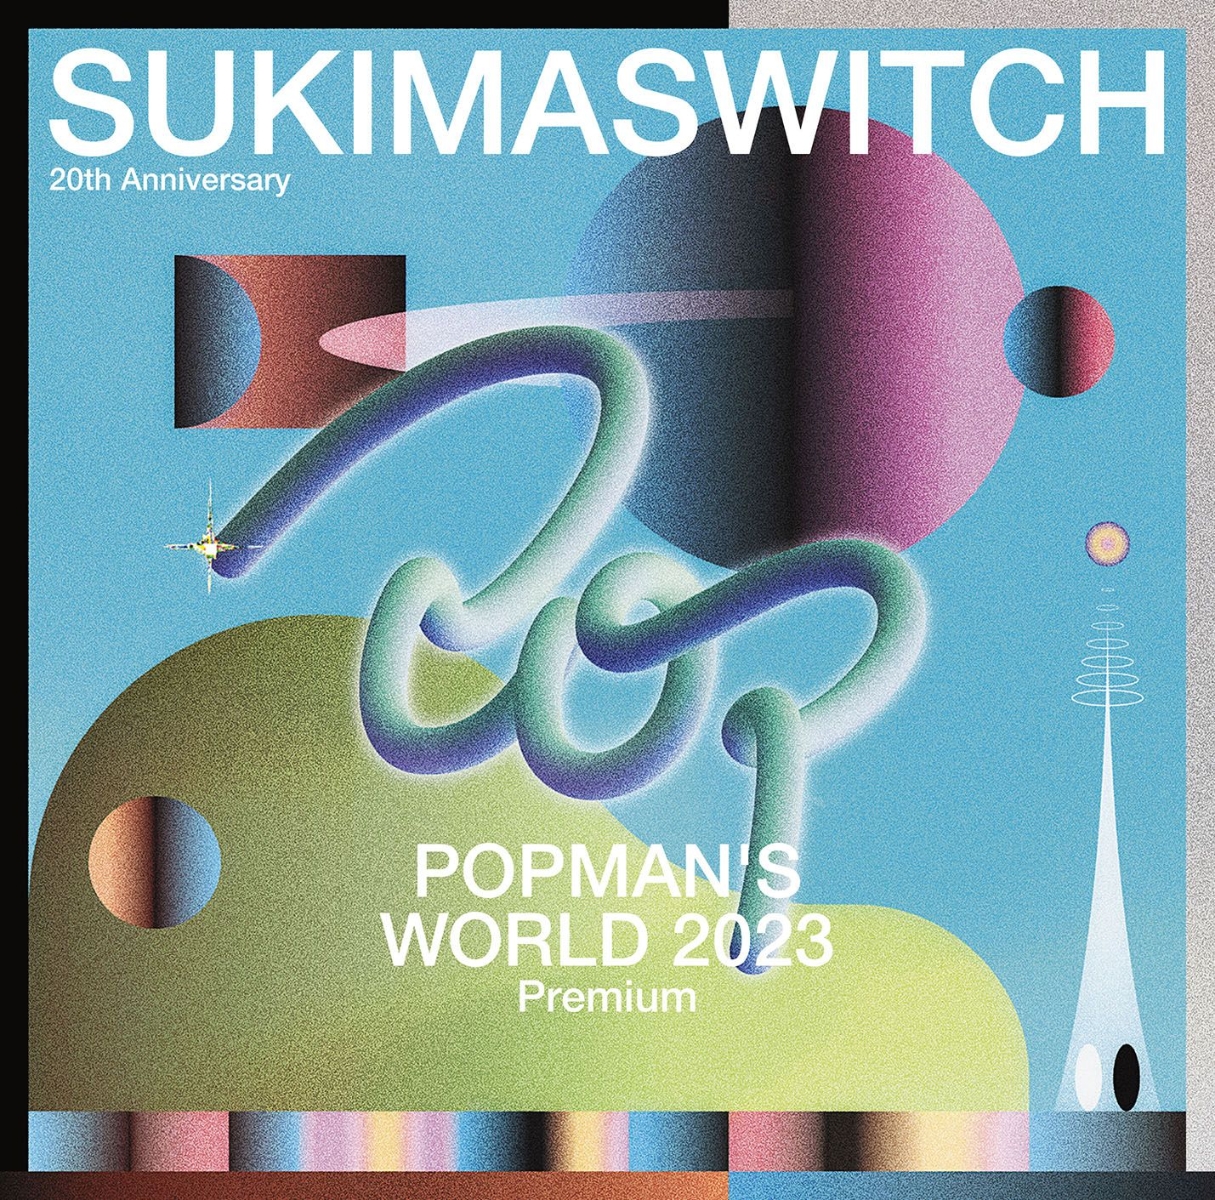 スキマスイッチ 20th Anniversary ”POPMAN'S WORLD 2023 Premium”画像